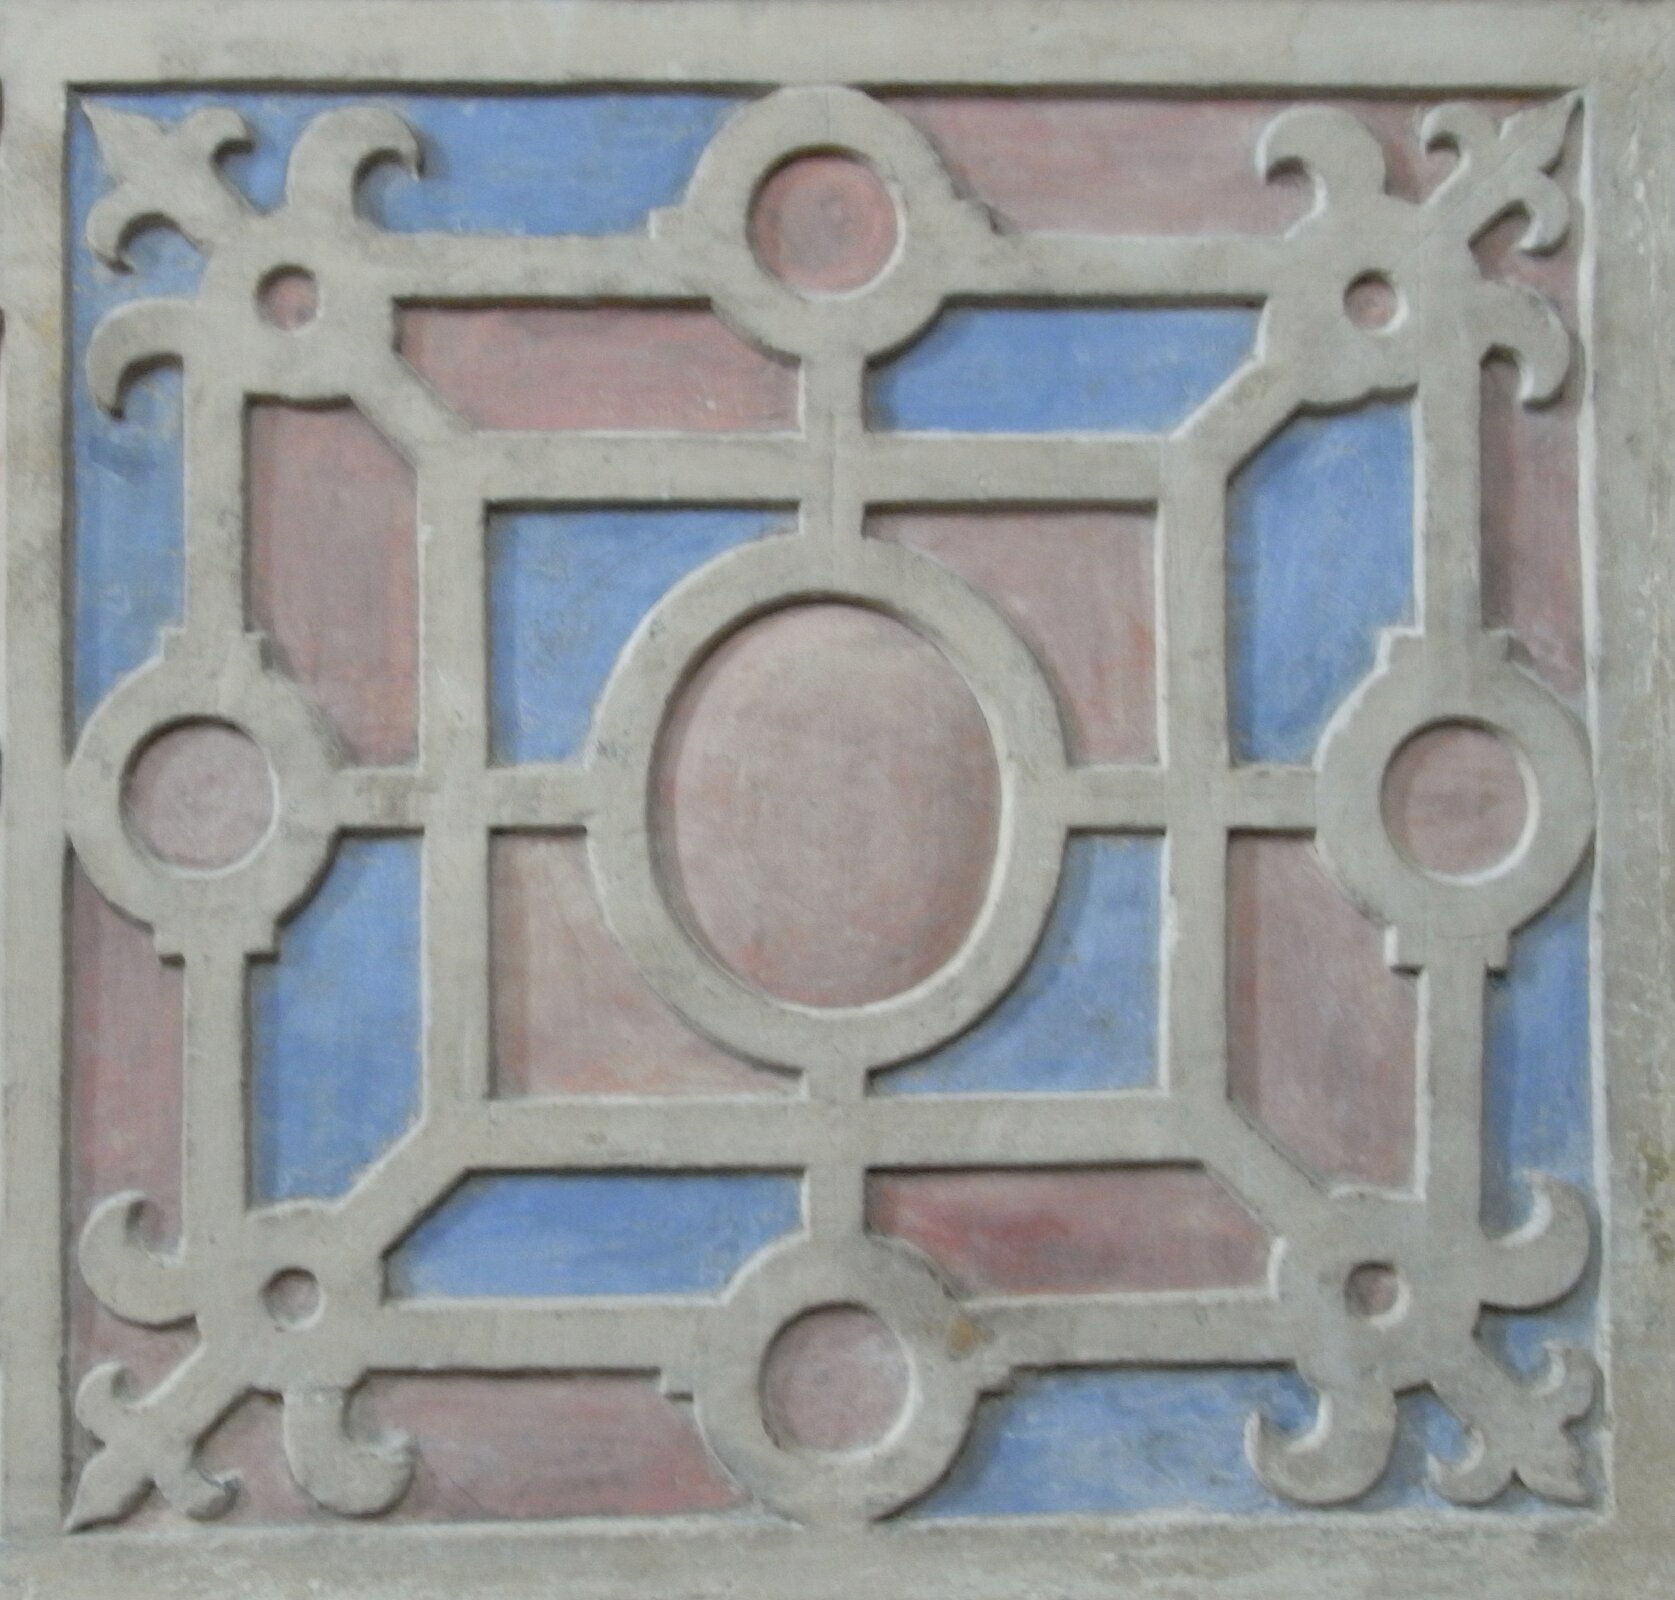 Ilustracja przedstawia ornament okuciowy. Ornament wykonany jest w kształcie kwadratu. W jego centralnym punkcie znajduje się okrąg. Dookoła niego naprzemiennie widoczne są okręgi oraz krzyże z zaokrąglonymi końcami. Wszystkie elementy połączone się liniami.